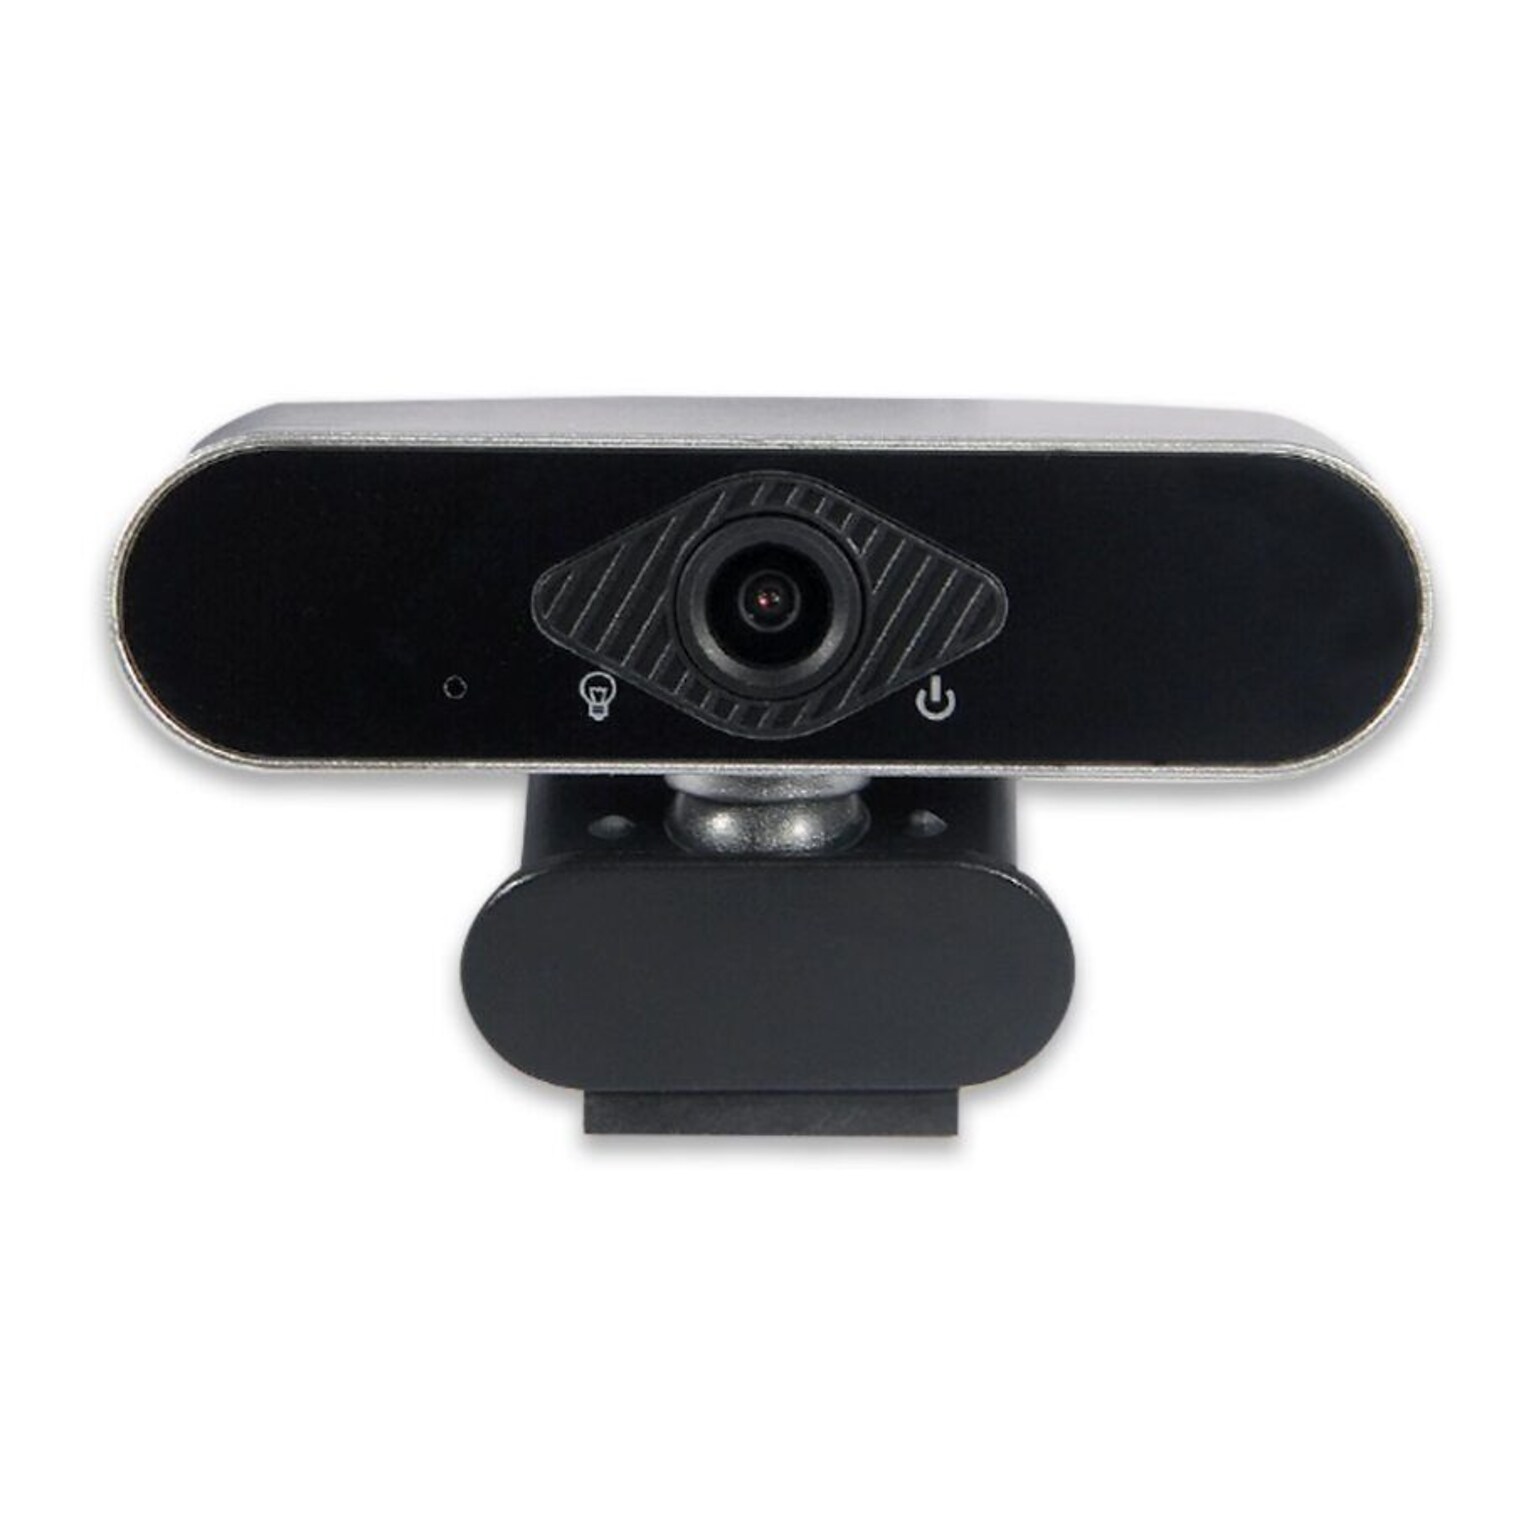 OTM Essentials HD Elite 2 Megapixels Portable Webcam, Black (OB-AJK)